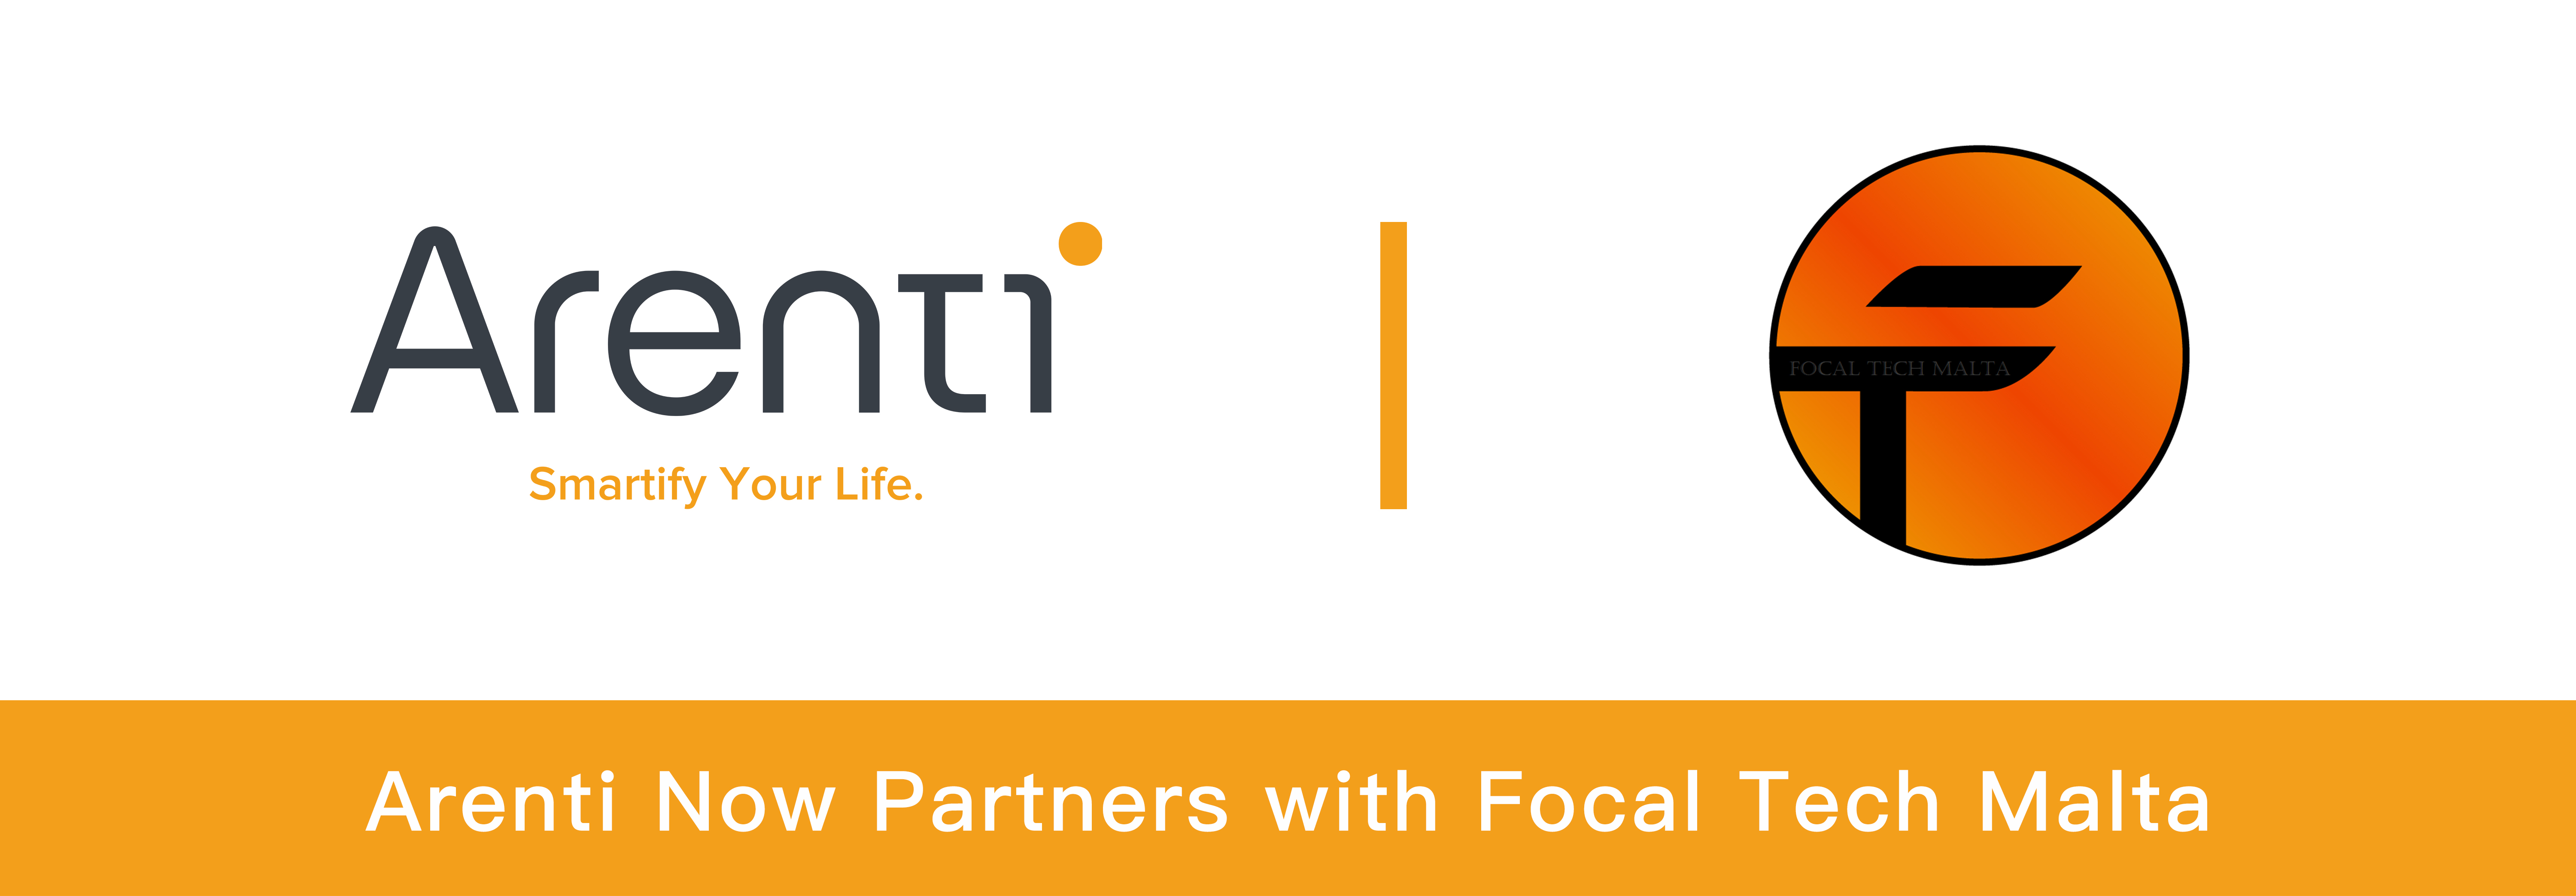 Partner gyda Focal Tech